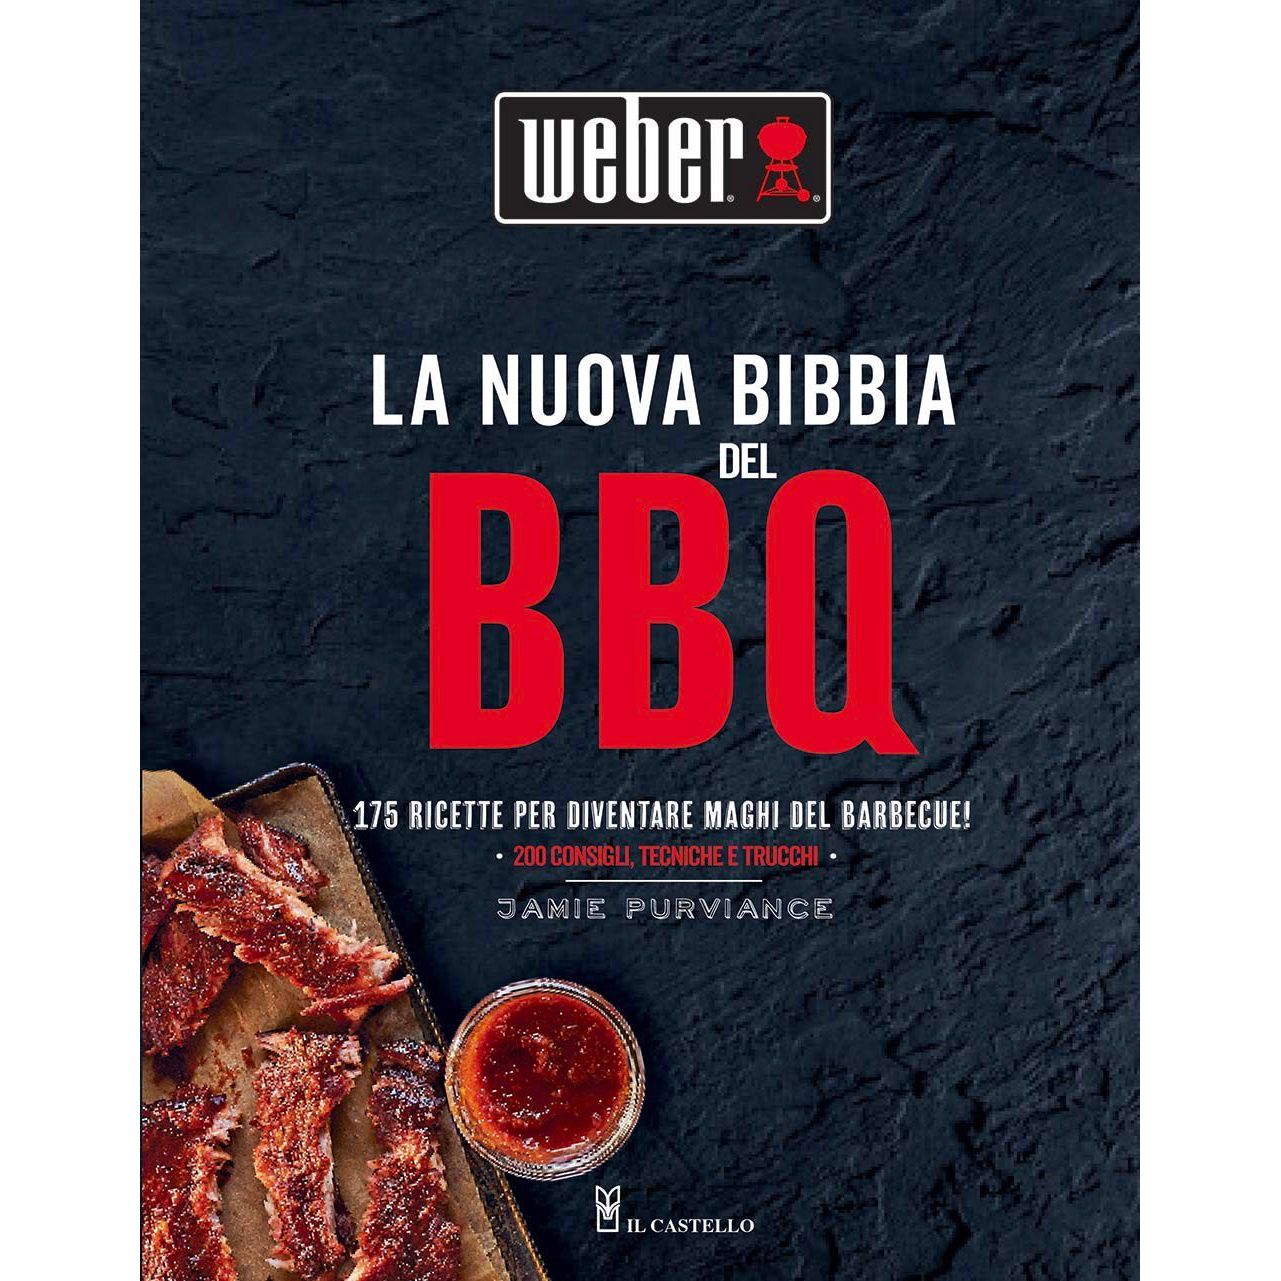 Image of Ricettario la Nuova Bibbia del Barbecue Weber